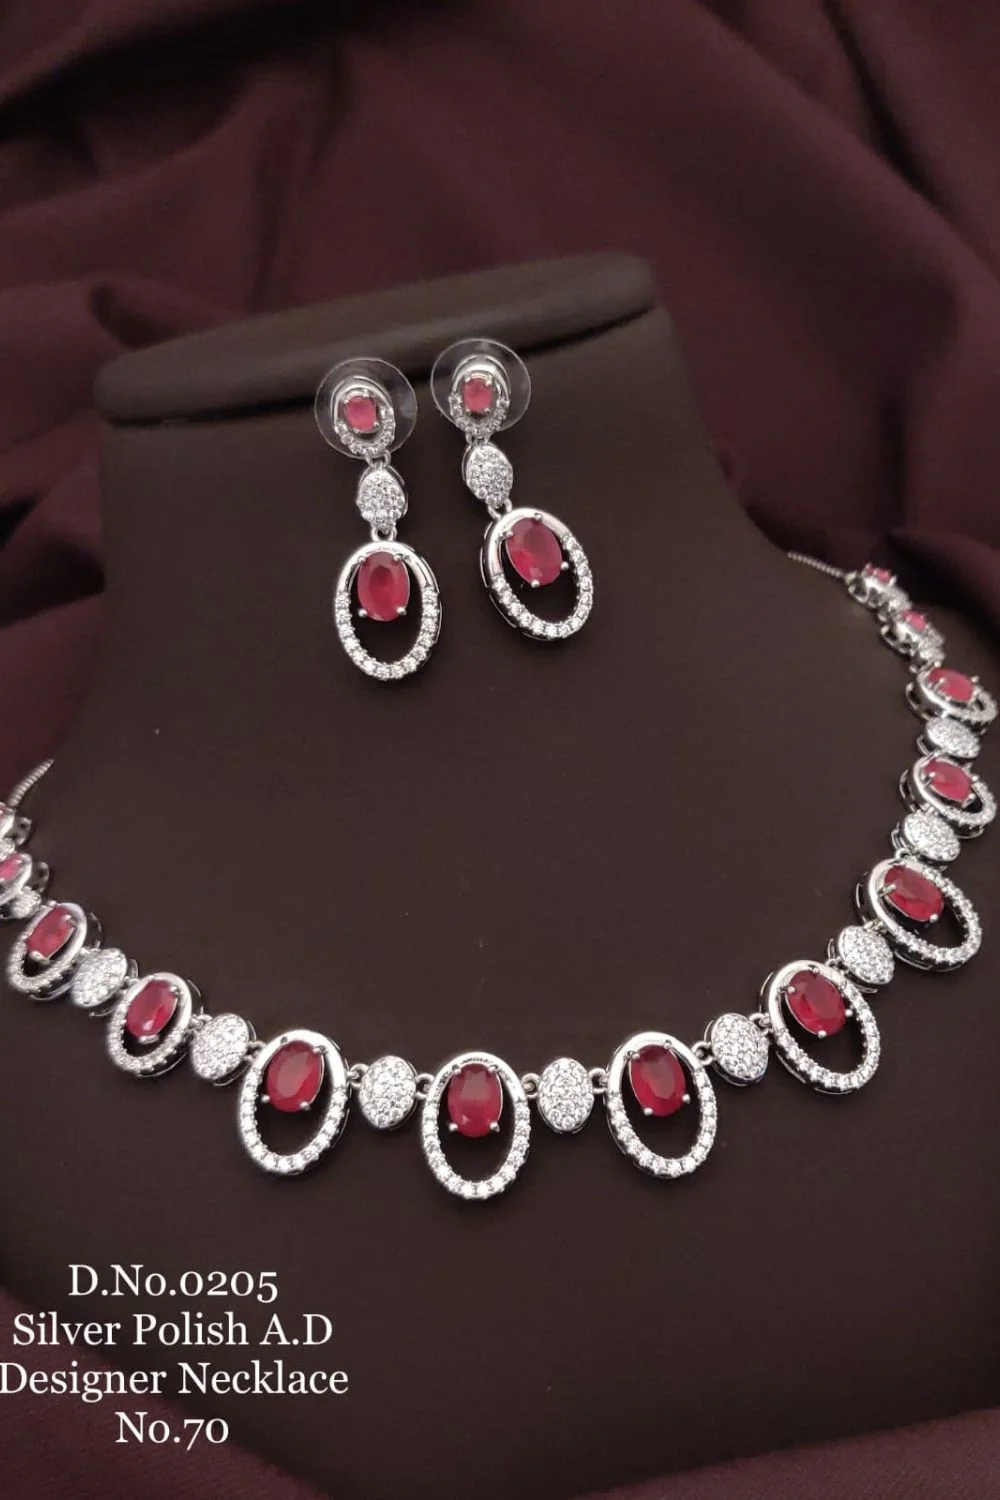 Stylish Silver Polished Designer Necklace